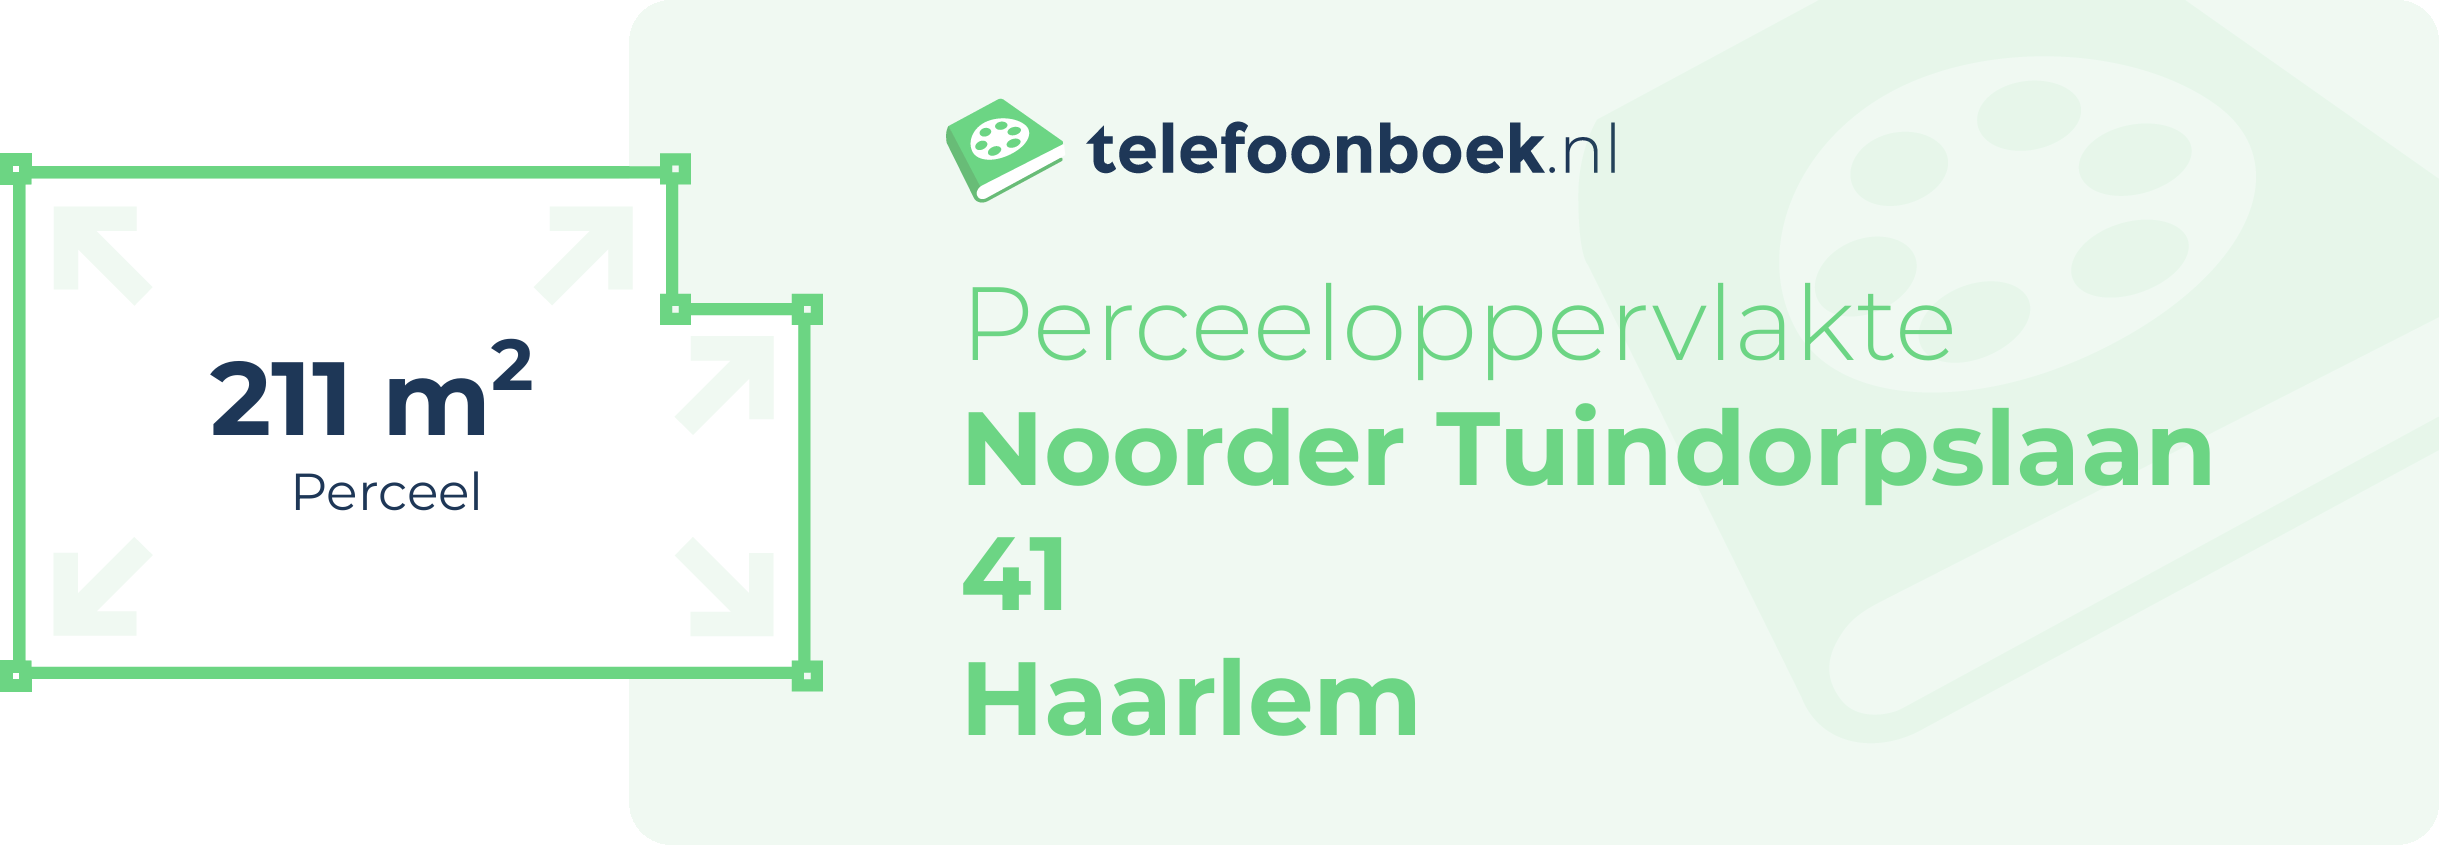 Perceeloppervlakte Noorder Tuindorpslaan 41 Haarlem